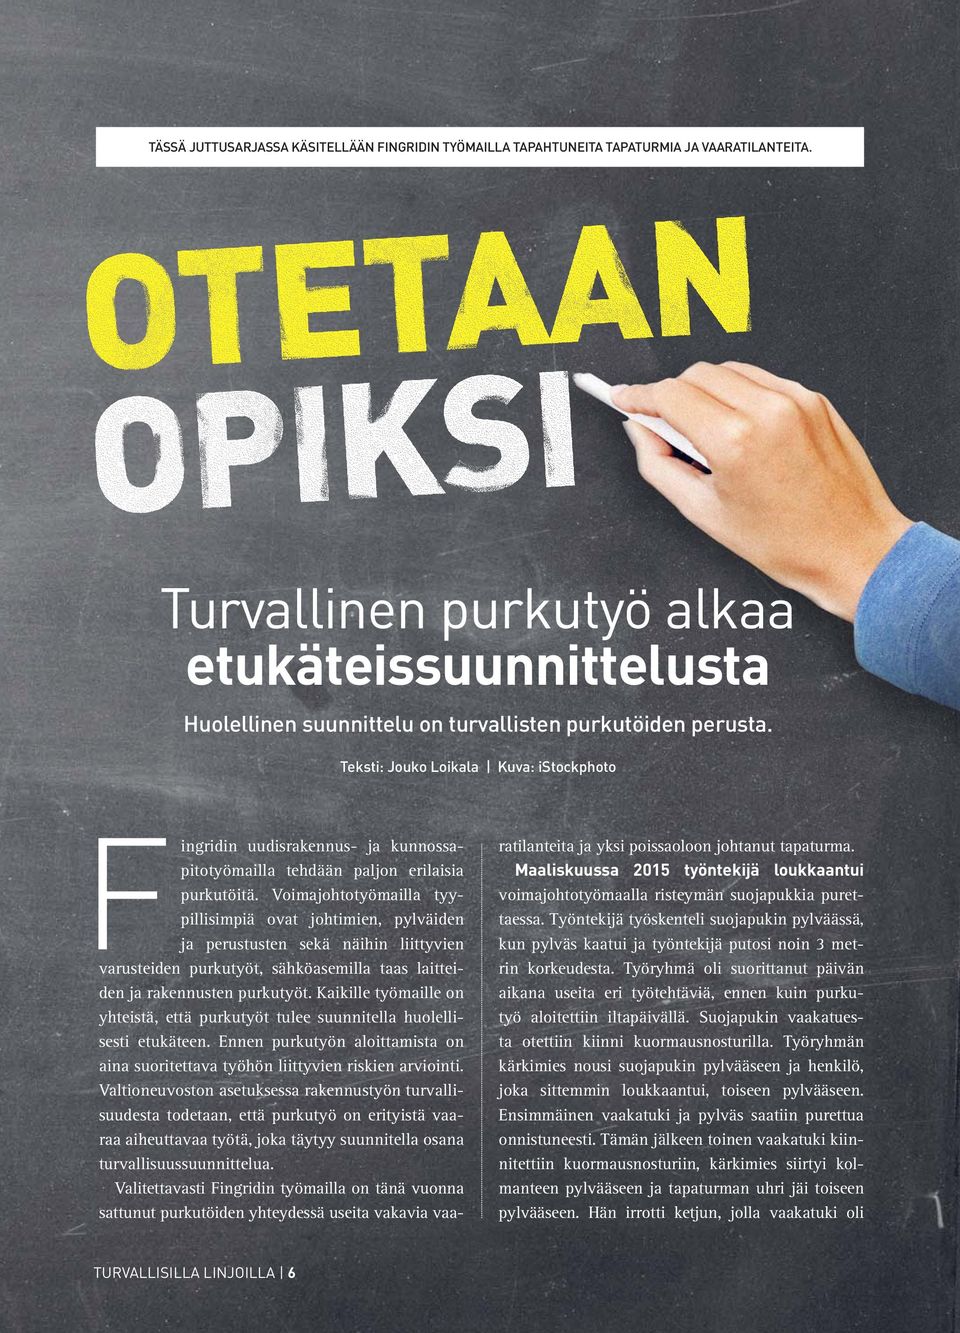 Teksti: Jouko Loikala Kuva: istockphoto Fingridin uudisrakennus- ja kunnossapitotyömailla tehdään paljon erilaisia purkutöitä.